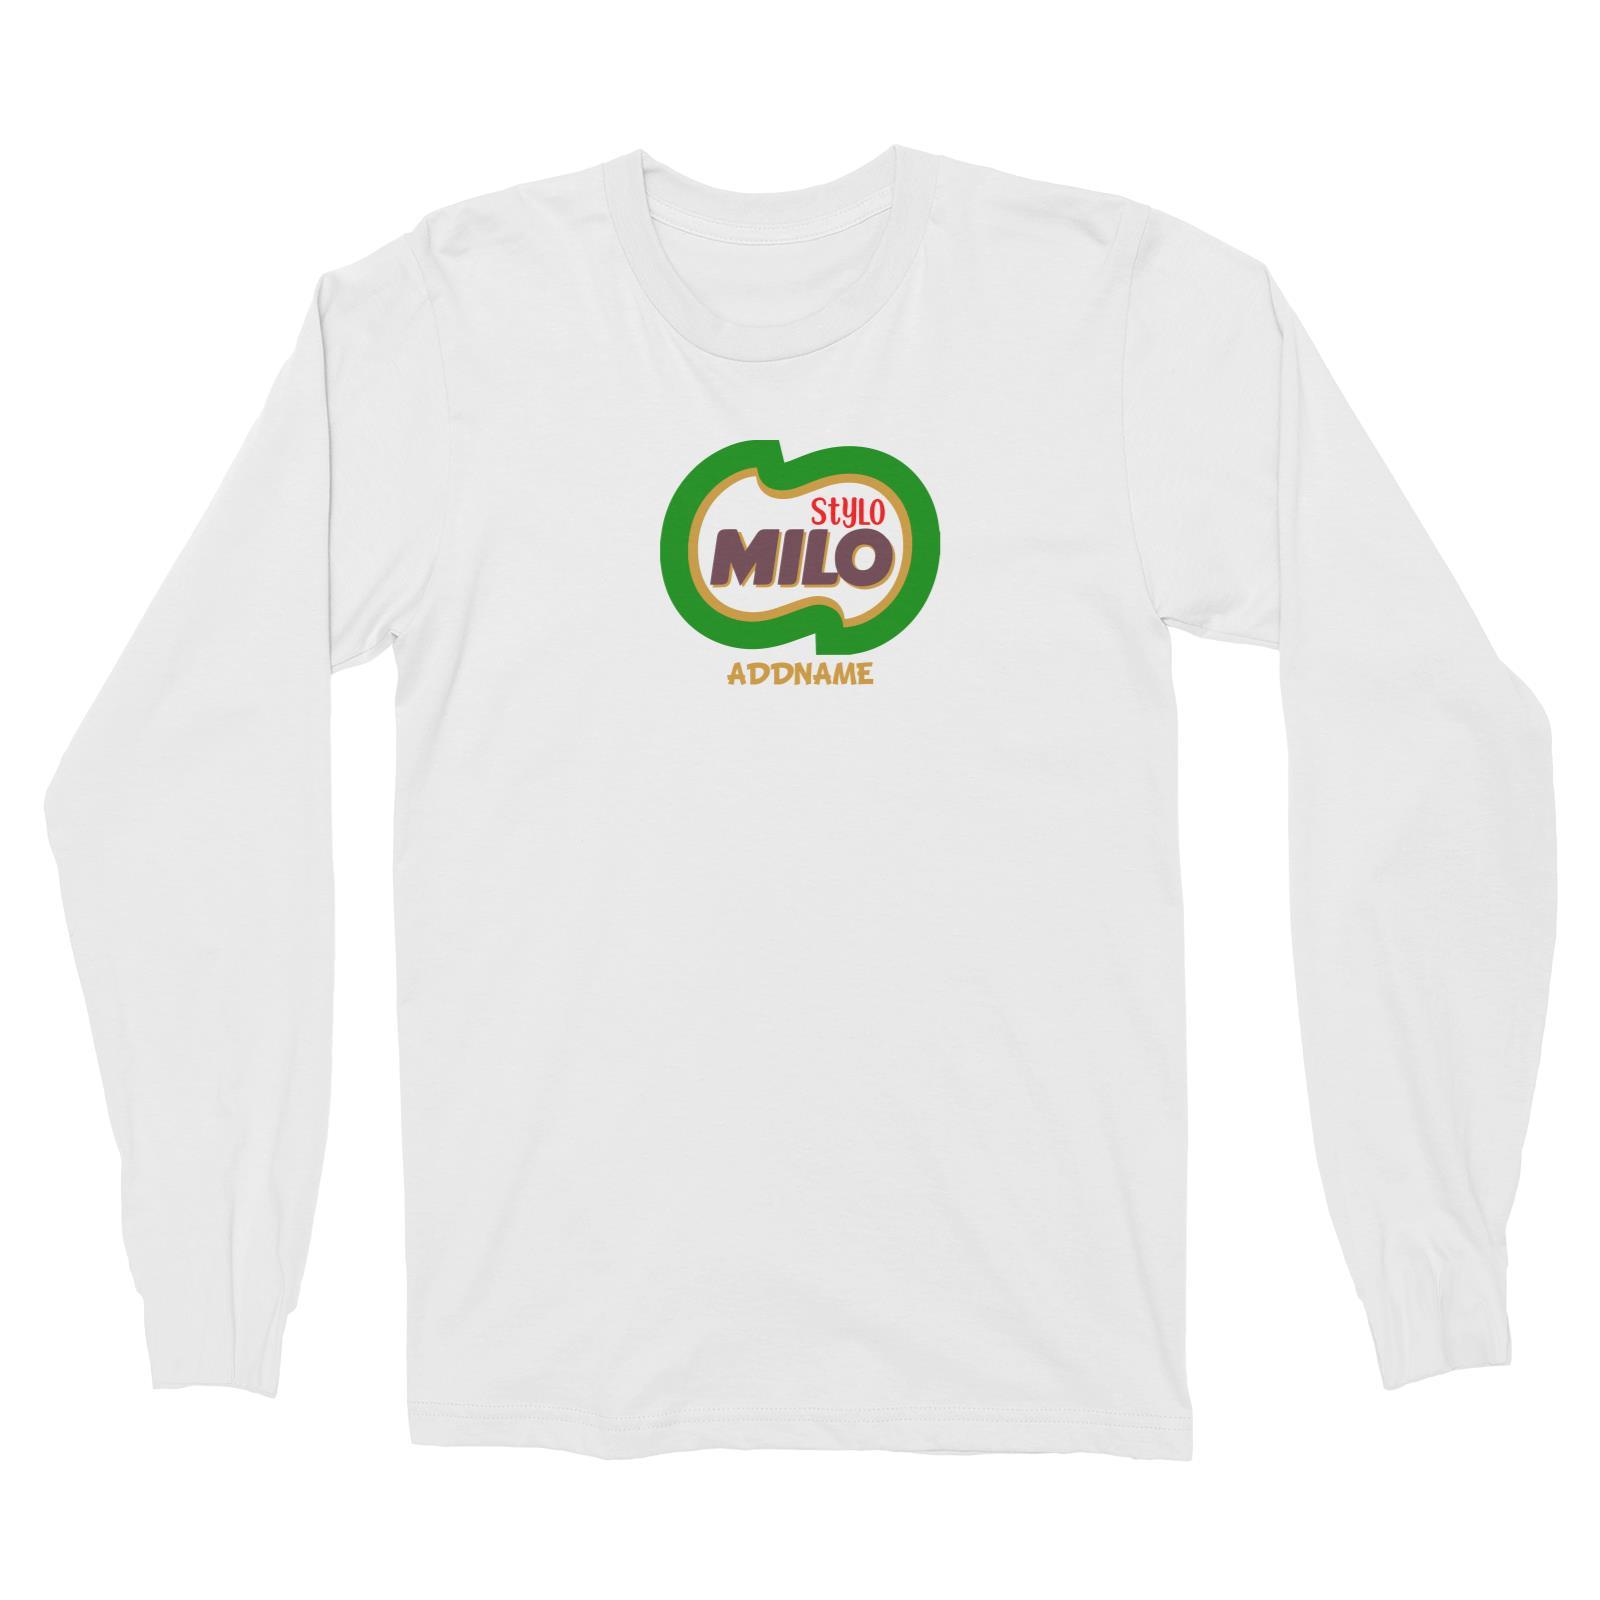 Stylo Milo Long Sleeve Unisex T-Shirt